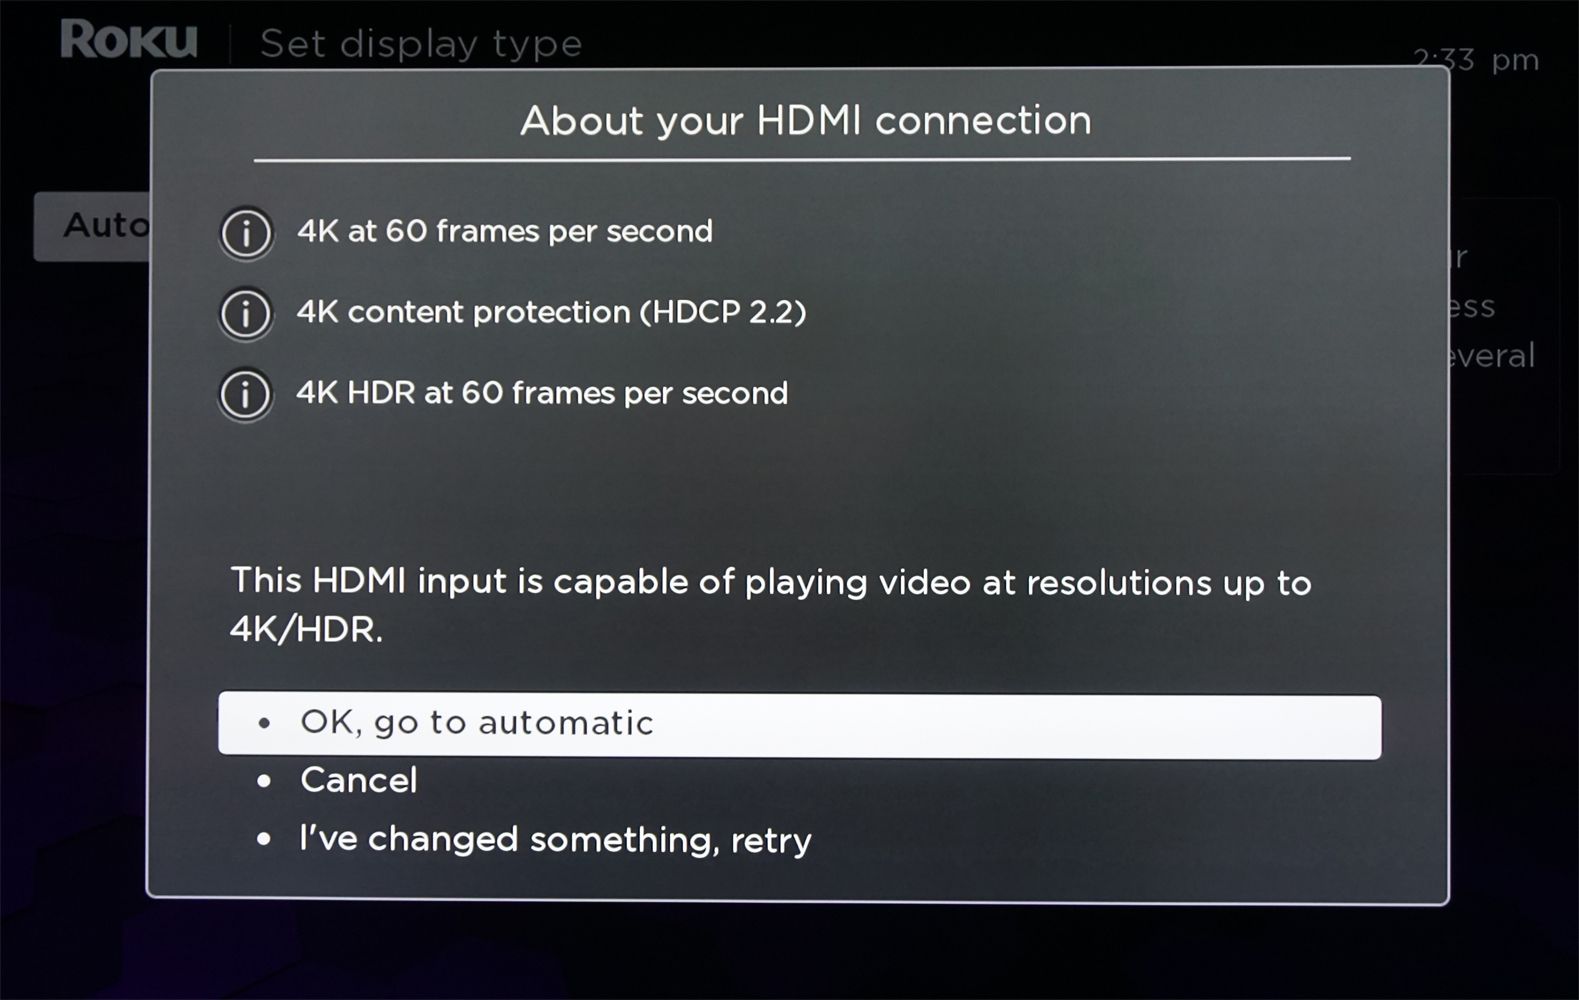 Roku Soundbar - Análise de conexão HDMI